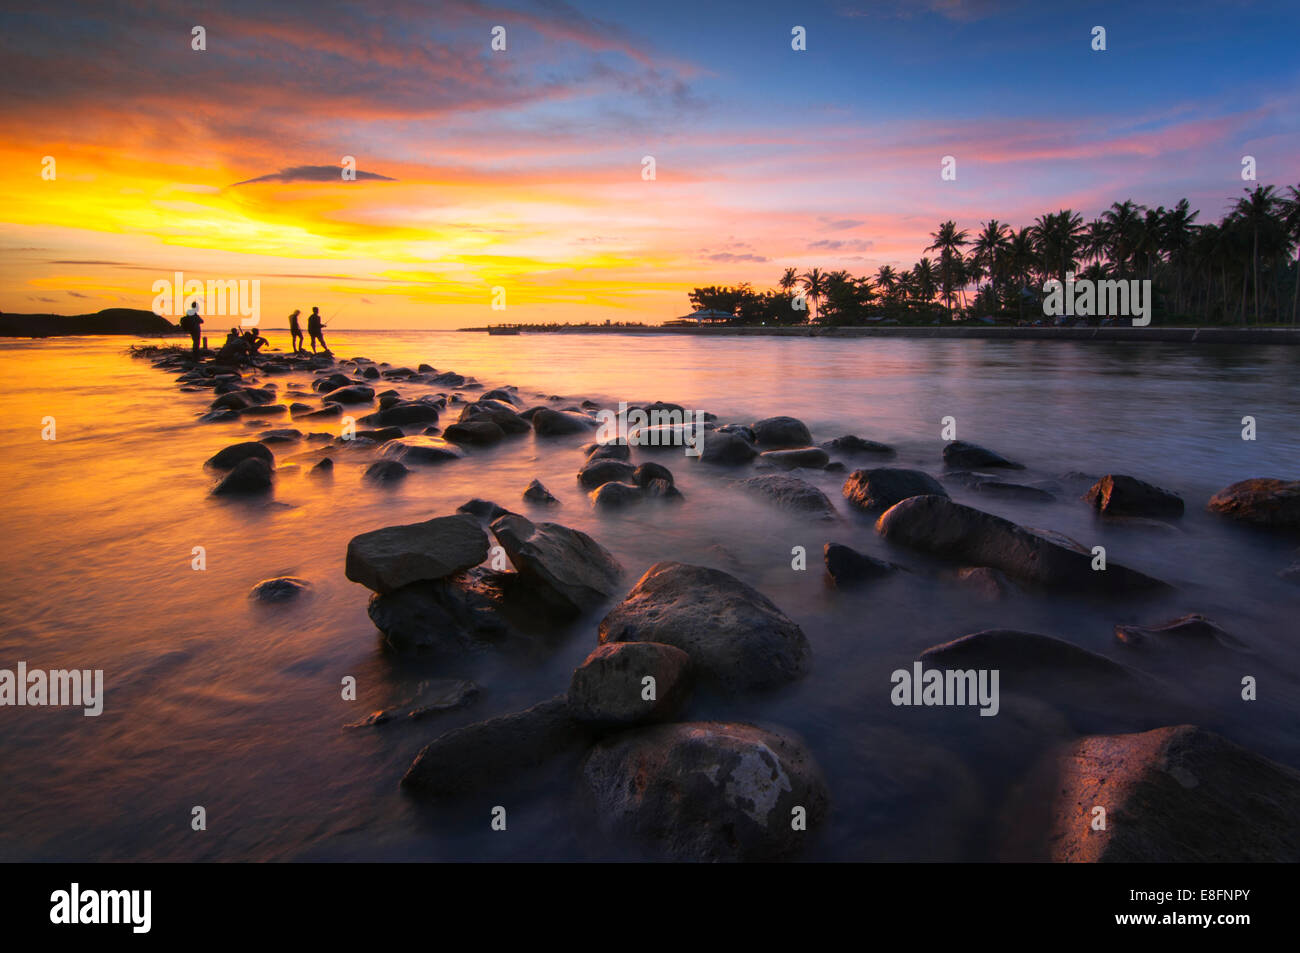 L'Indonésie, Sumatra, l'Ouest de Sumatra, Silhouette de personnes sur la plage au coucher du soleil Banque D'Images